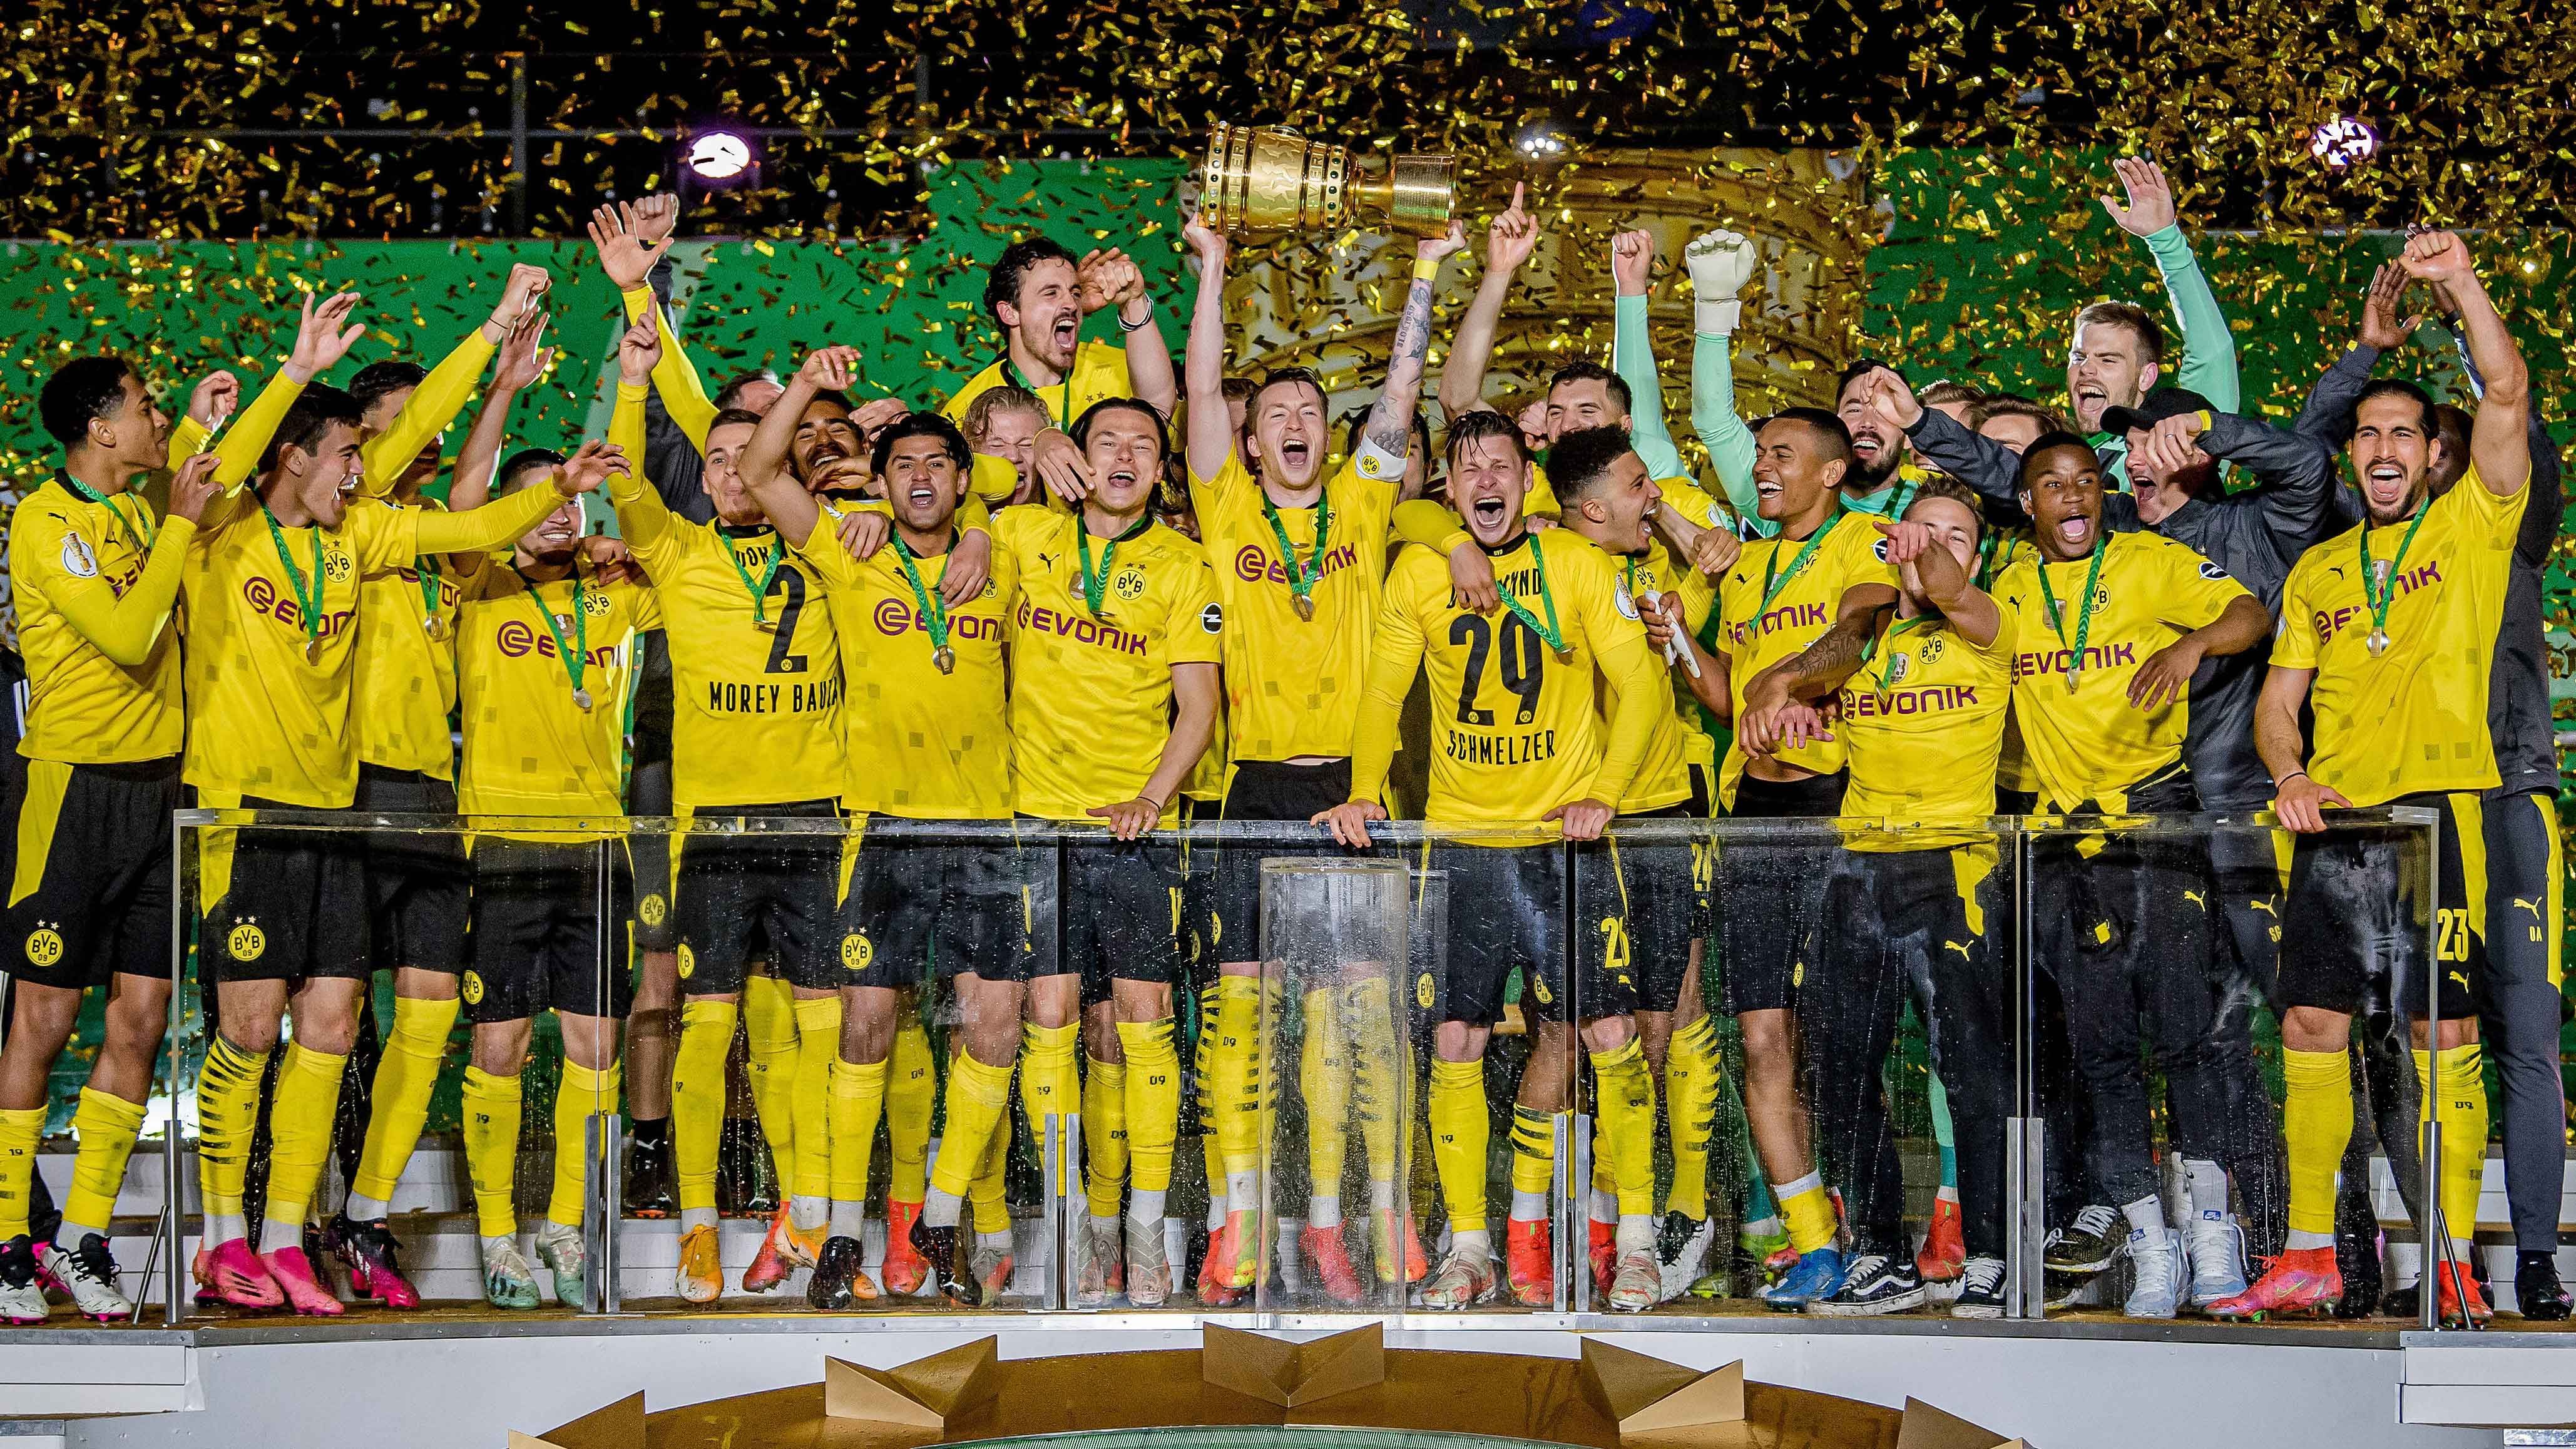 
                <strong>Platz 1: Borussia Dortmund (38,57 Millionen Euro)</strong><br>
                Borussia Dortmund ist Spitzenreiter! Zumindest was die Ausgaben für Spielerberater angeht. Rund 38,57 Millionen Euro hat der BVB in der Saison 19/20 für Dienste von Spielerberatern ausgegeben. Am Ende der abgelaufenen Saison sprang dafür immerhin der Pokalsieg heraus.
              